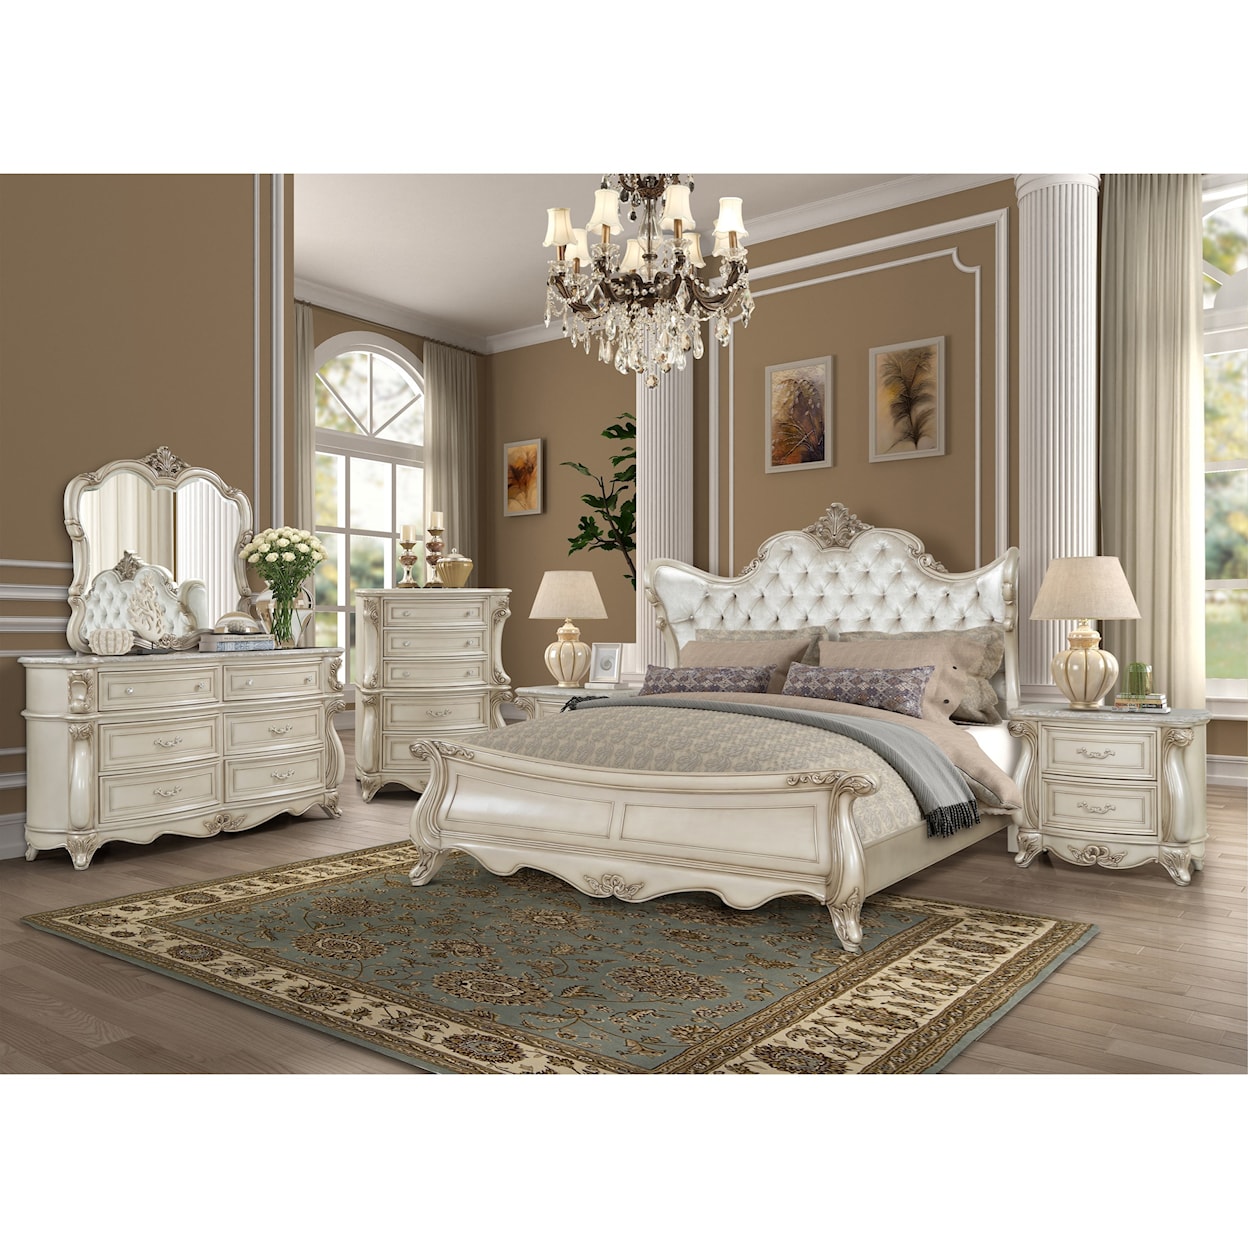 New Classic Furniture Monique Queen Bedroom Group